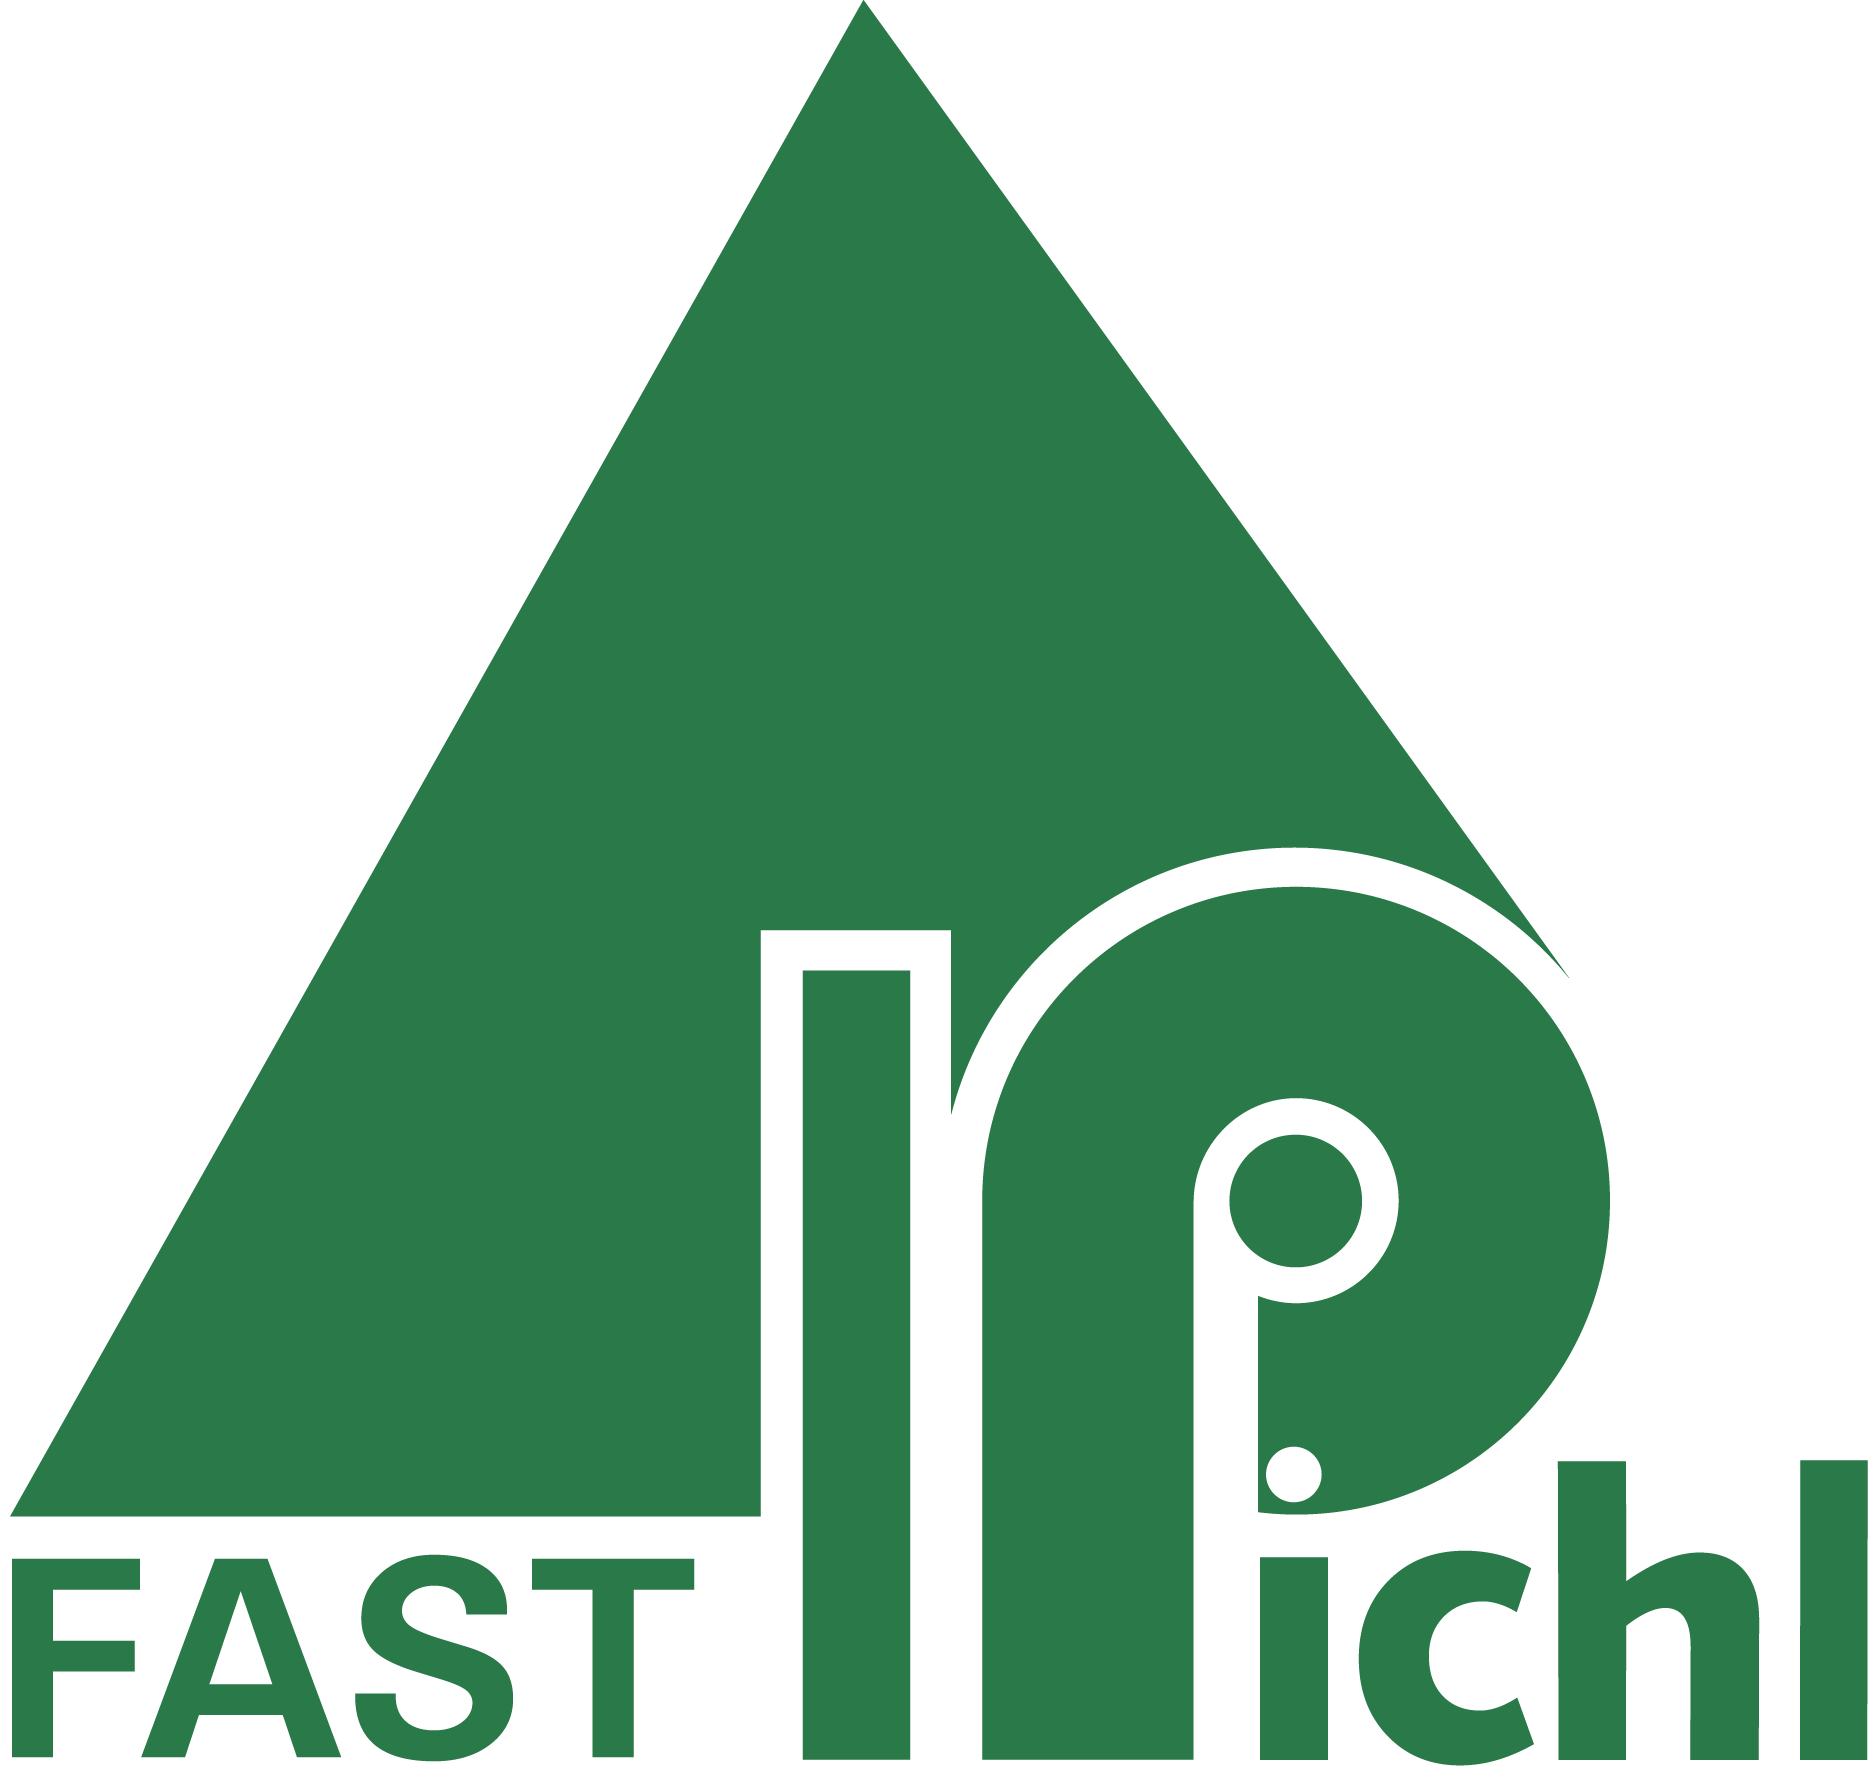 Fast Pichl